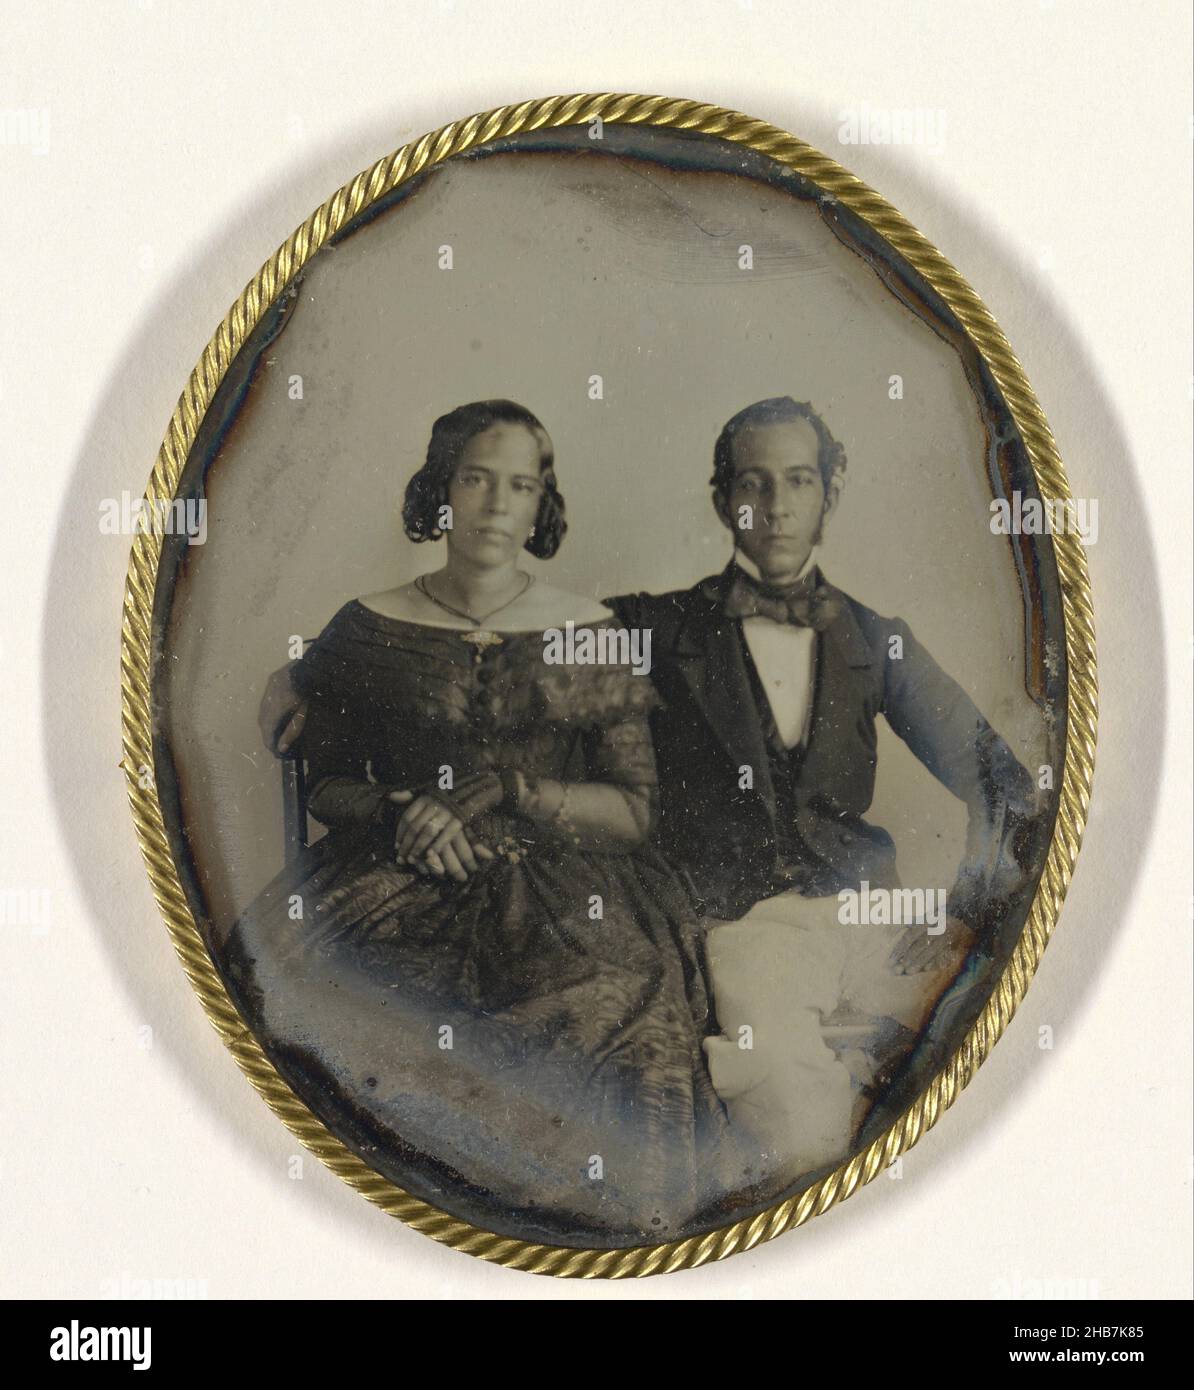 Portrait d'un couple au Suriname, Portrait de Johannes Ellis et de sa femme  Maria Louisa de Hart, J.L. Riker (peut-être), Warren Thomson (peut-être),  Paramaribo (peut-être), c.1846, dekglas : verre, hauteur 94 mm ×